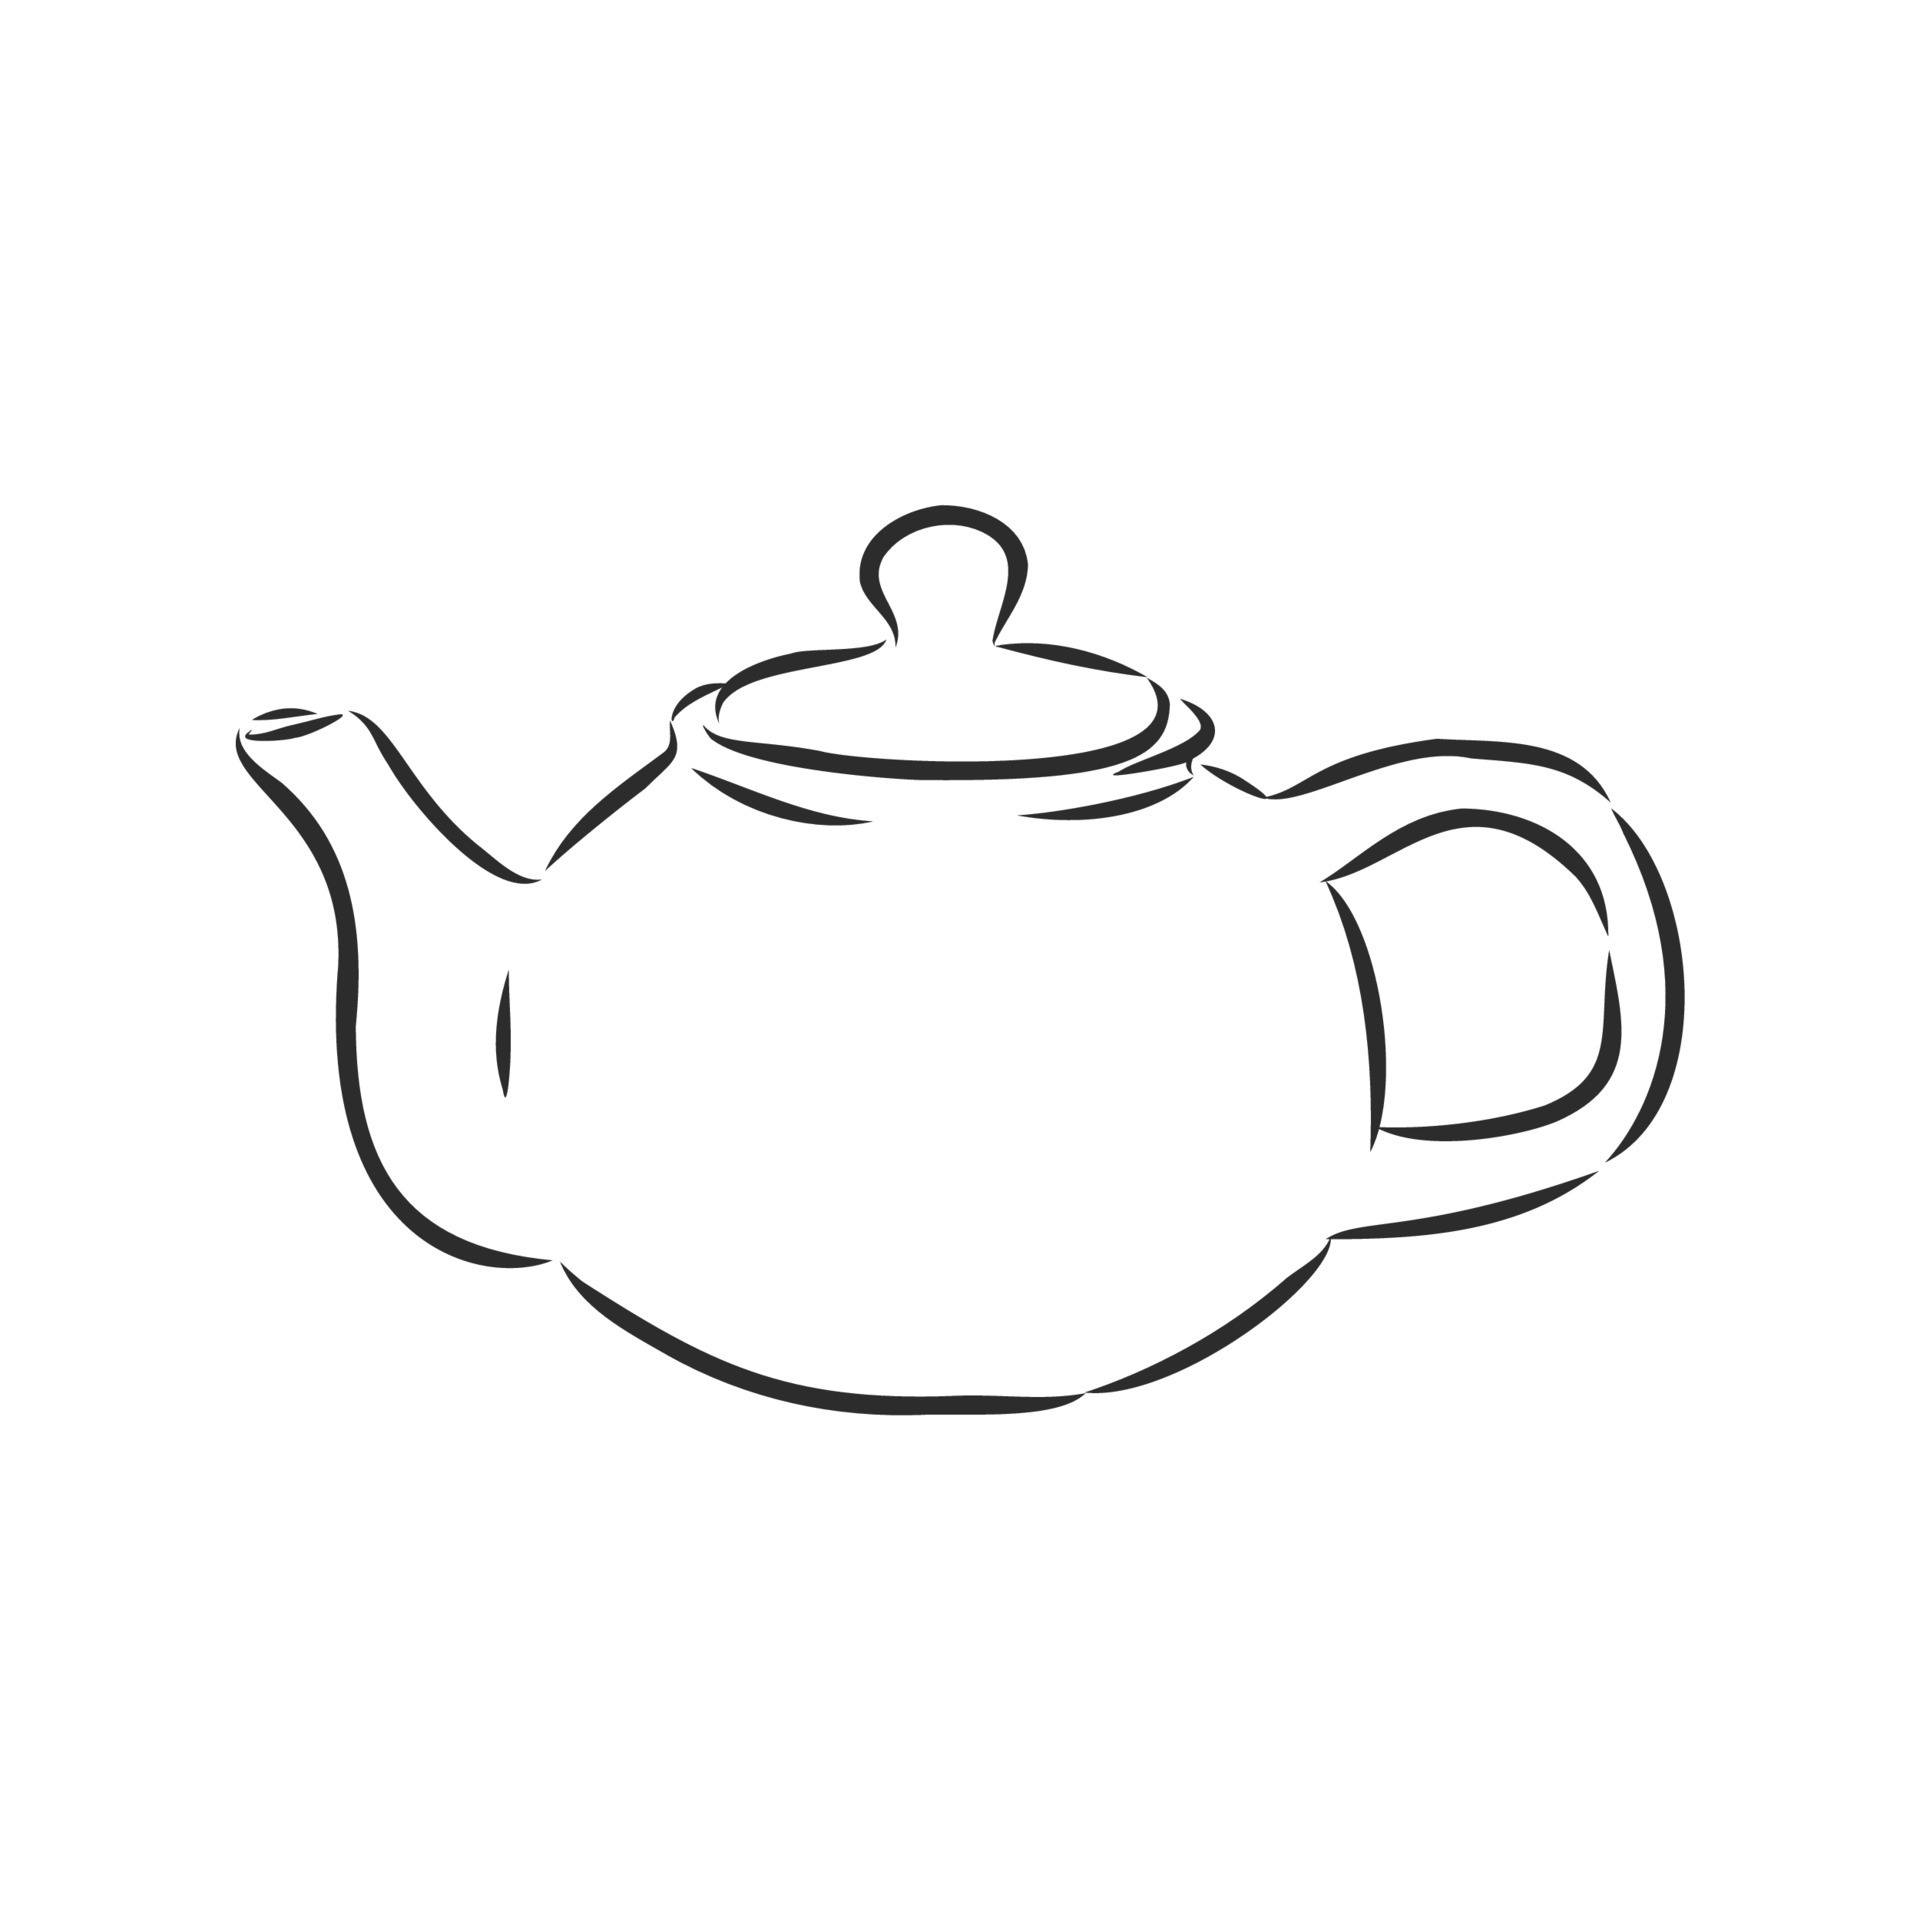 teapot vector sketch 11094812 Vector Art at Vecteezy